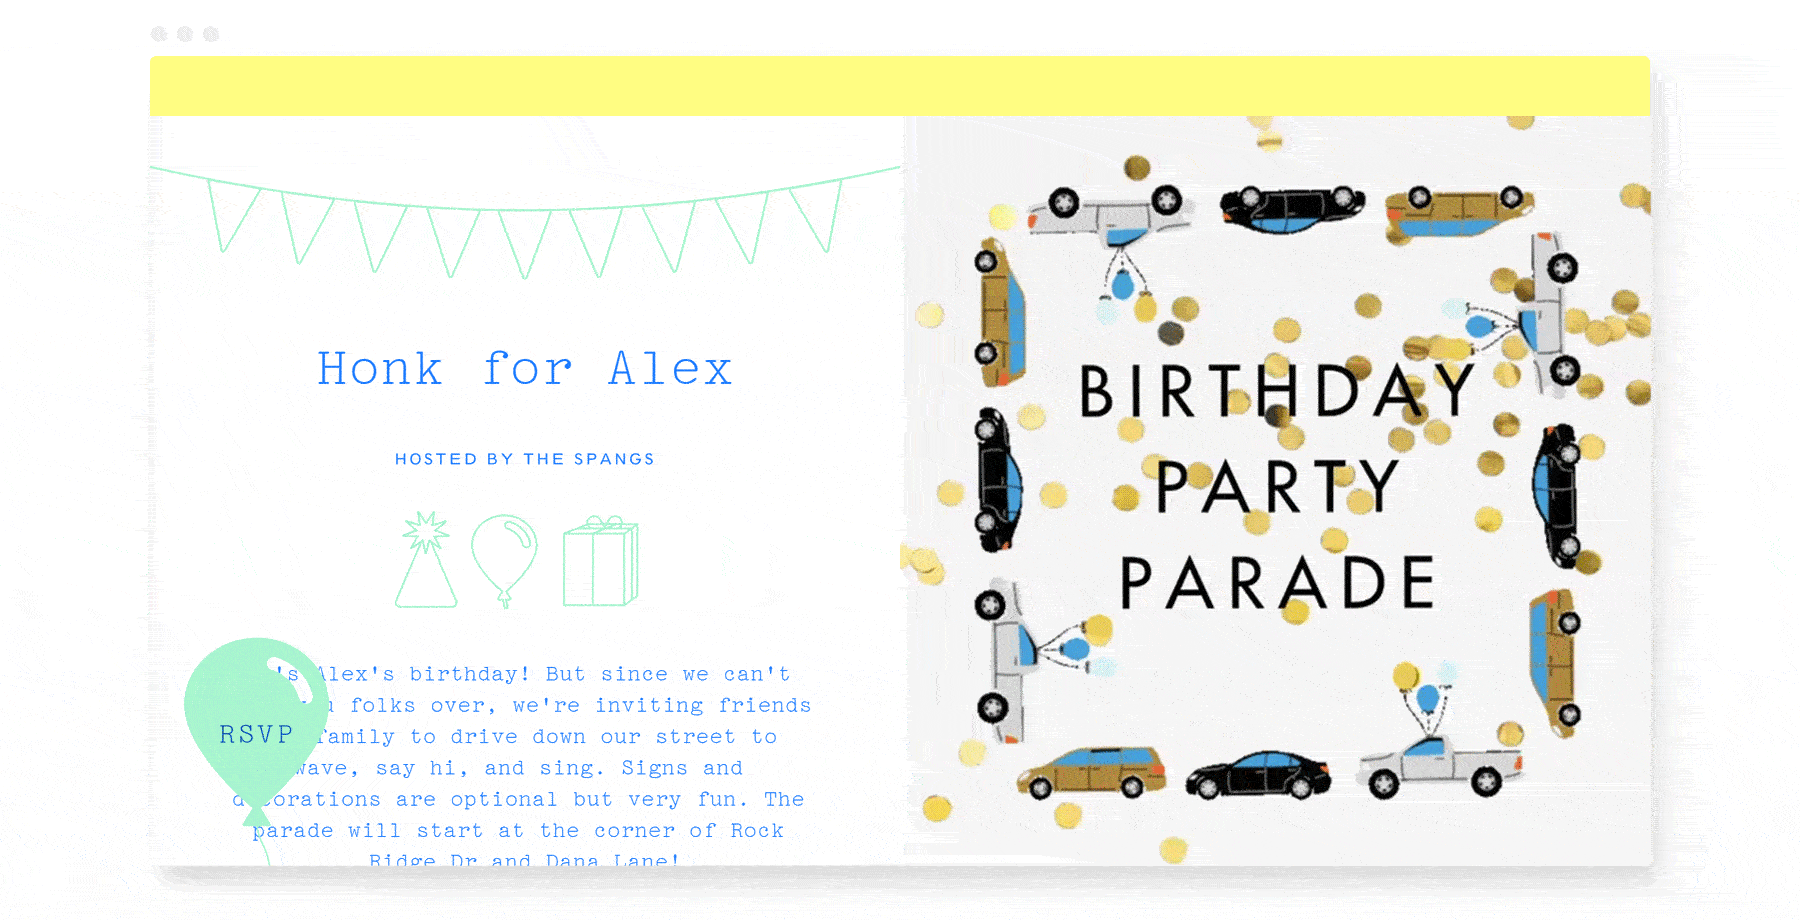 Birthday party parade ideas